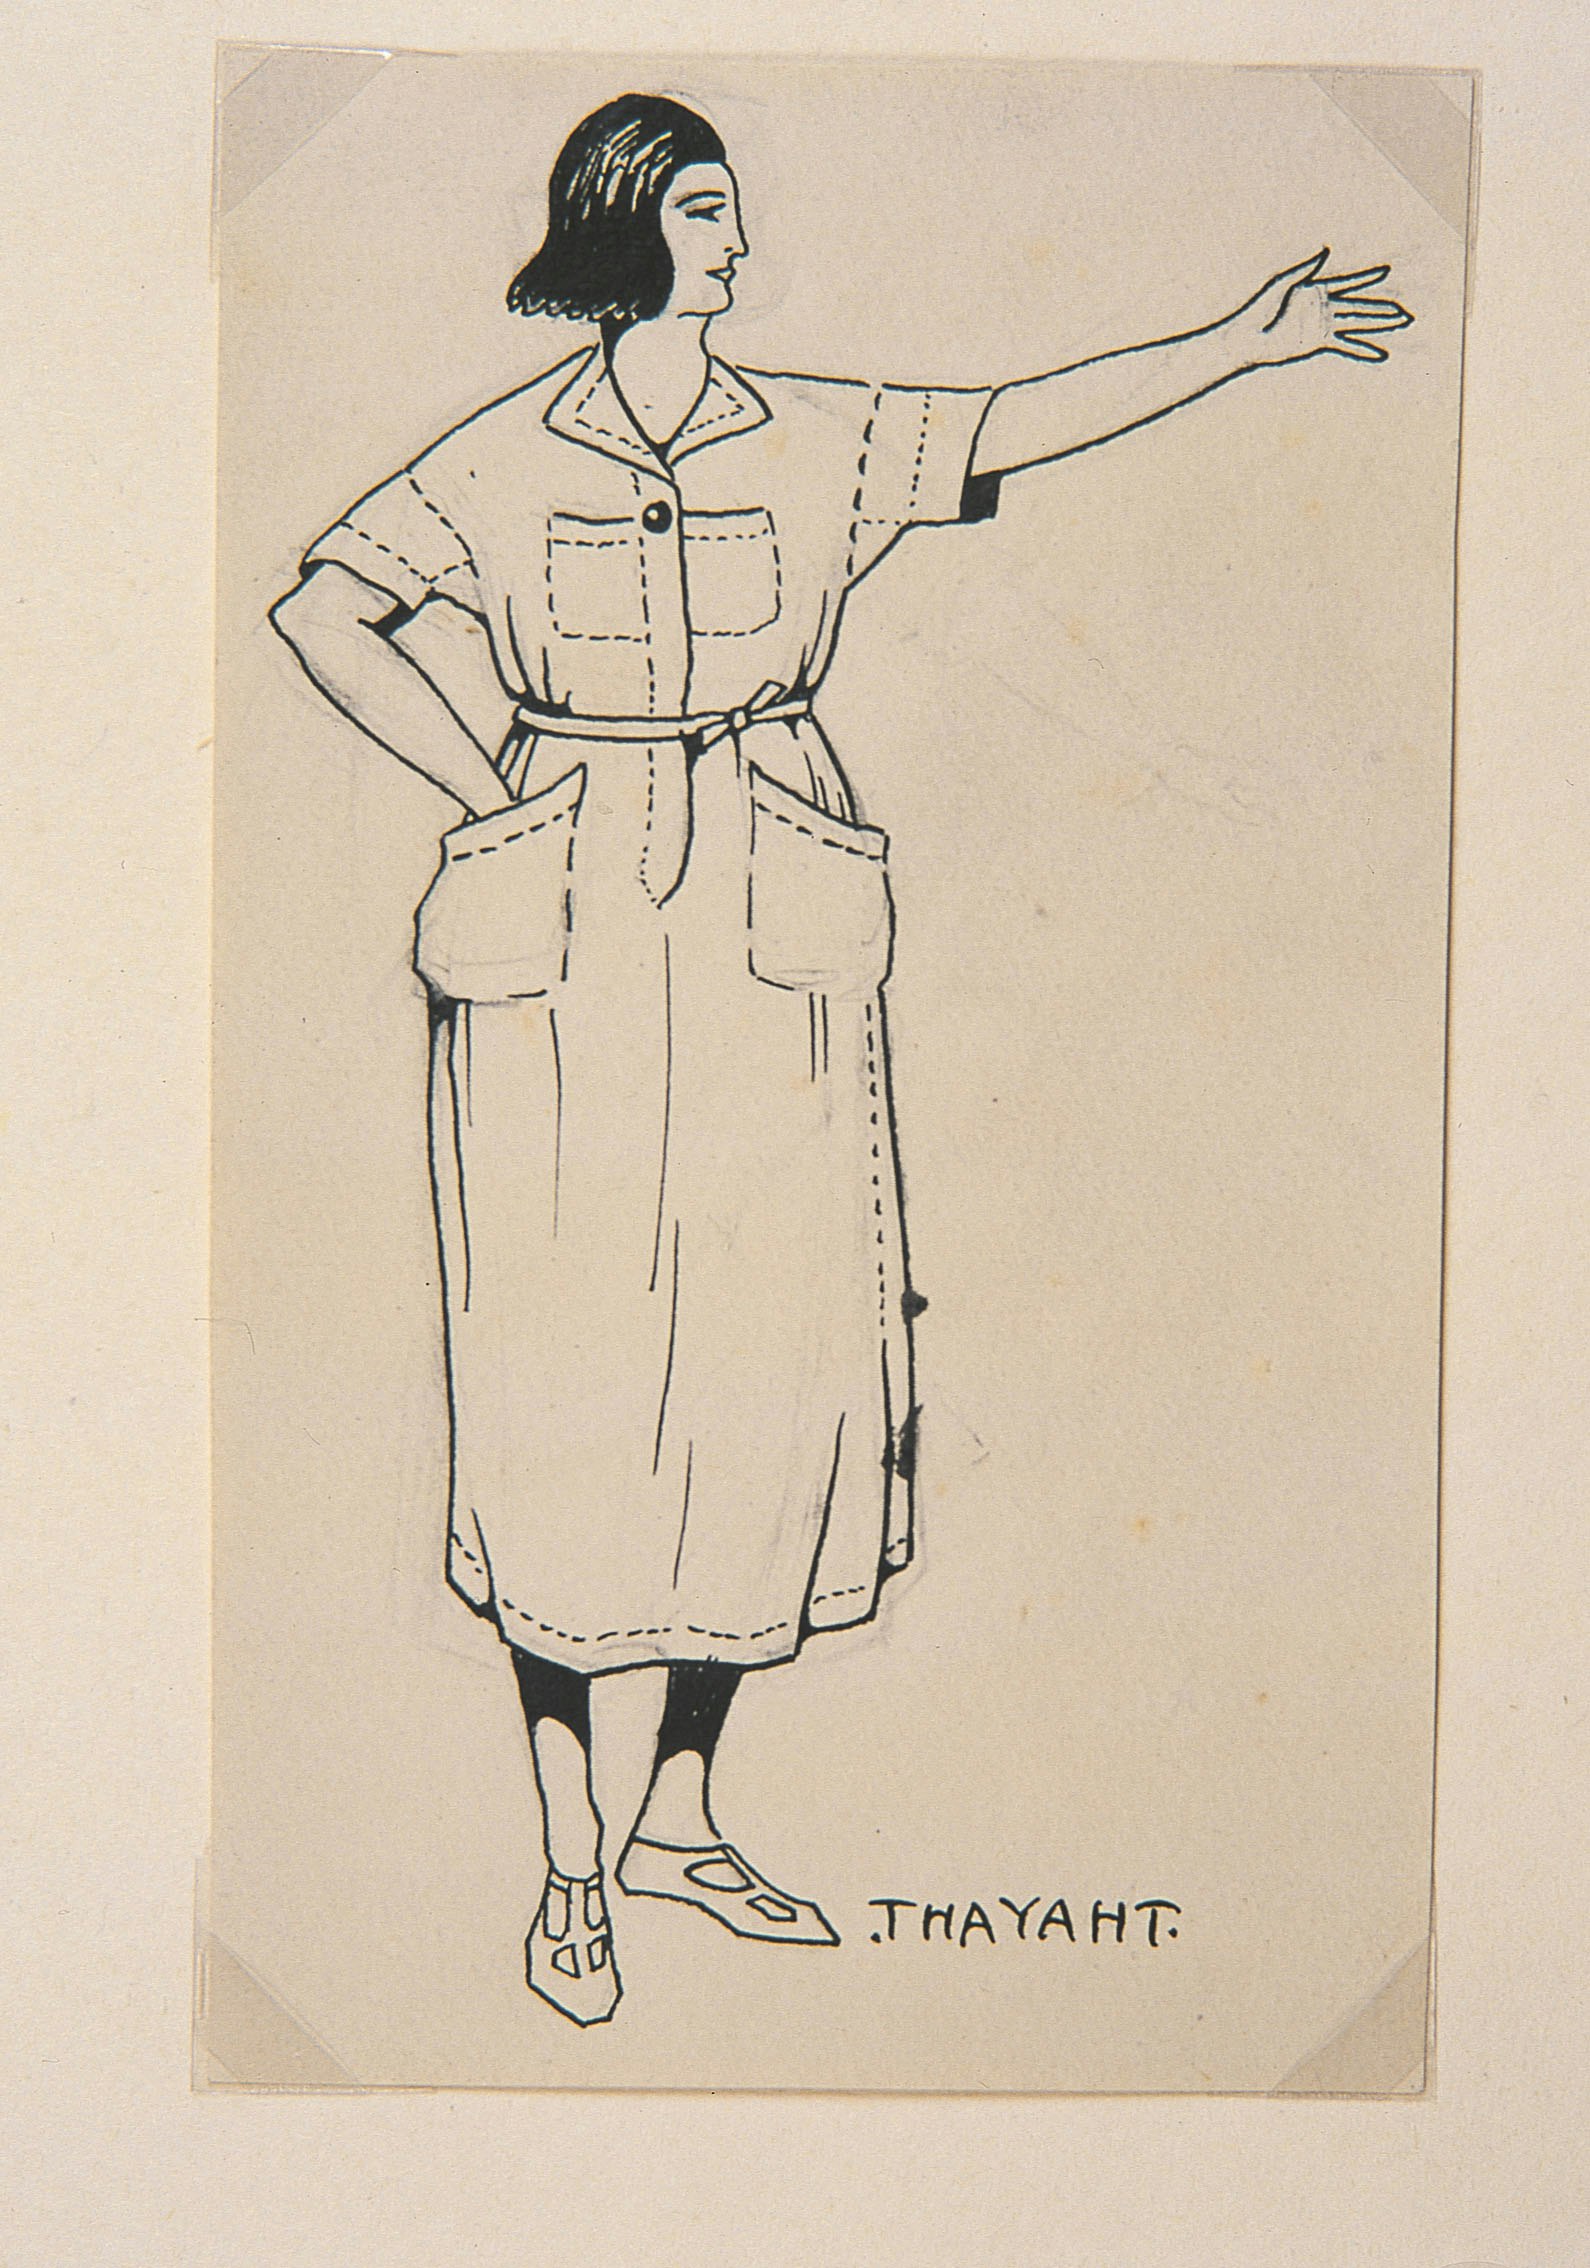 Thayaht, Modello della Tuta femminile, 1920, matita nera e inchiostro di china su carta, cm 18,5 x 11